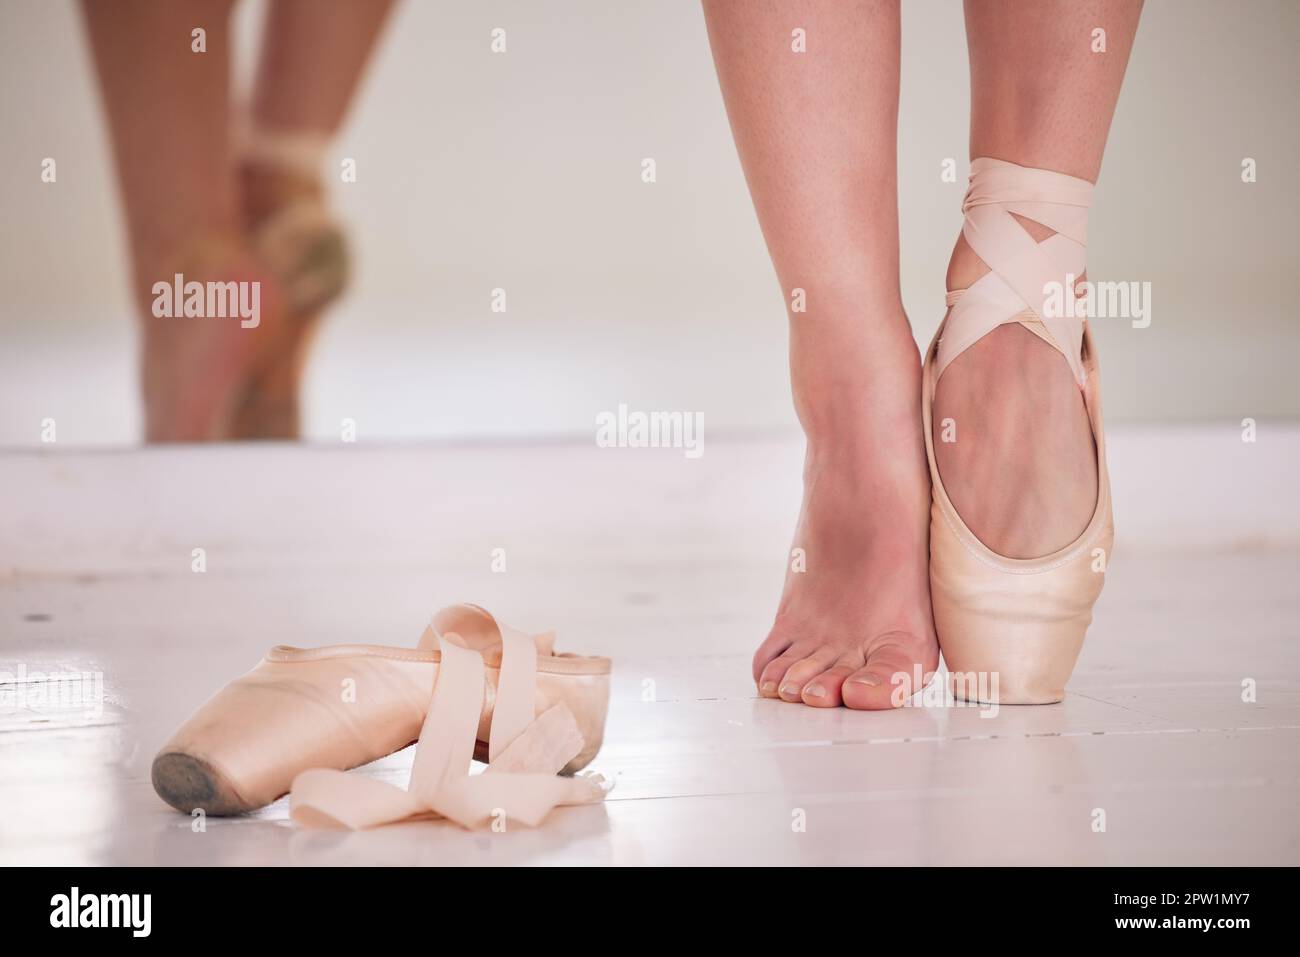 Gros pieds de ballet, ballerines de pointe ou jambes de danseuse après  avoir dansé une chorégraphie de scène belle, élégante ou élégante. Femme  professionnelle ou théate Photo Stock - Alamy